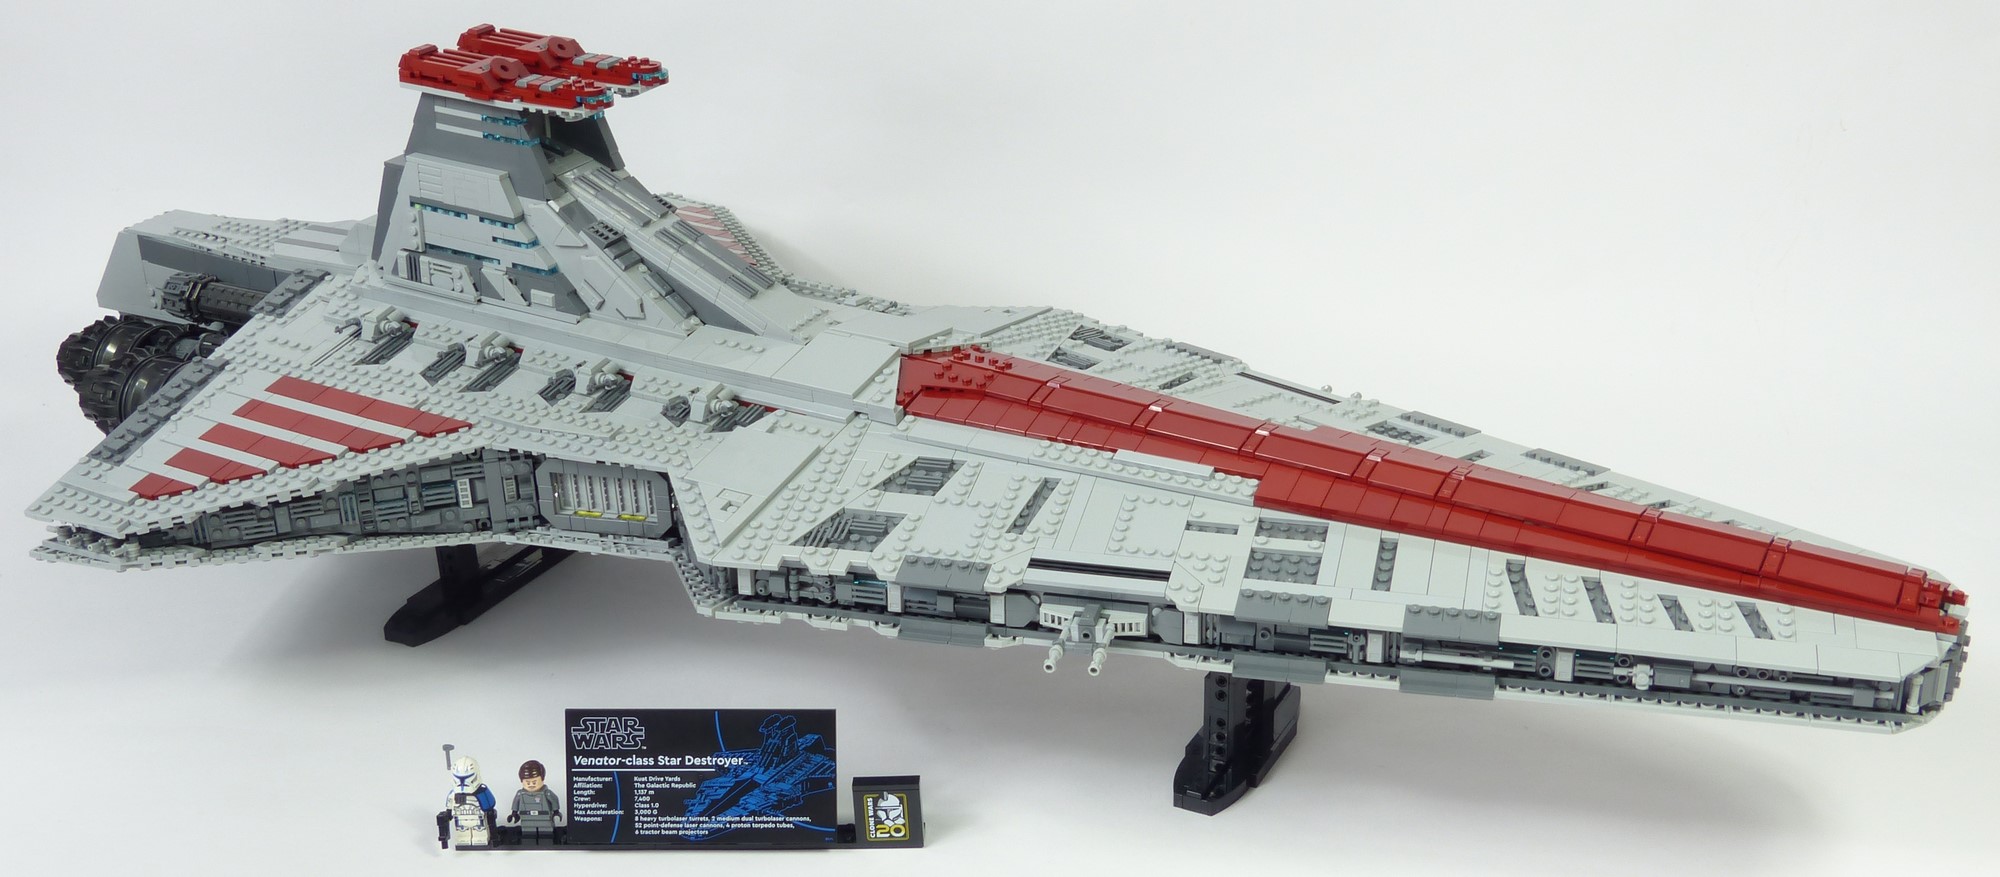  Review Lego Star Wars #75367 Venator Star Destroyer